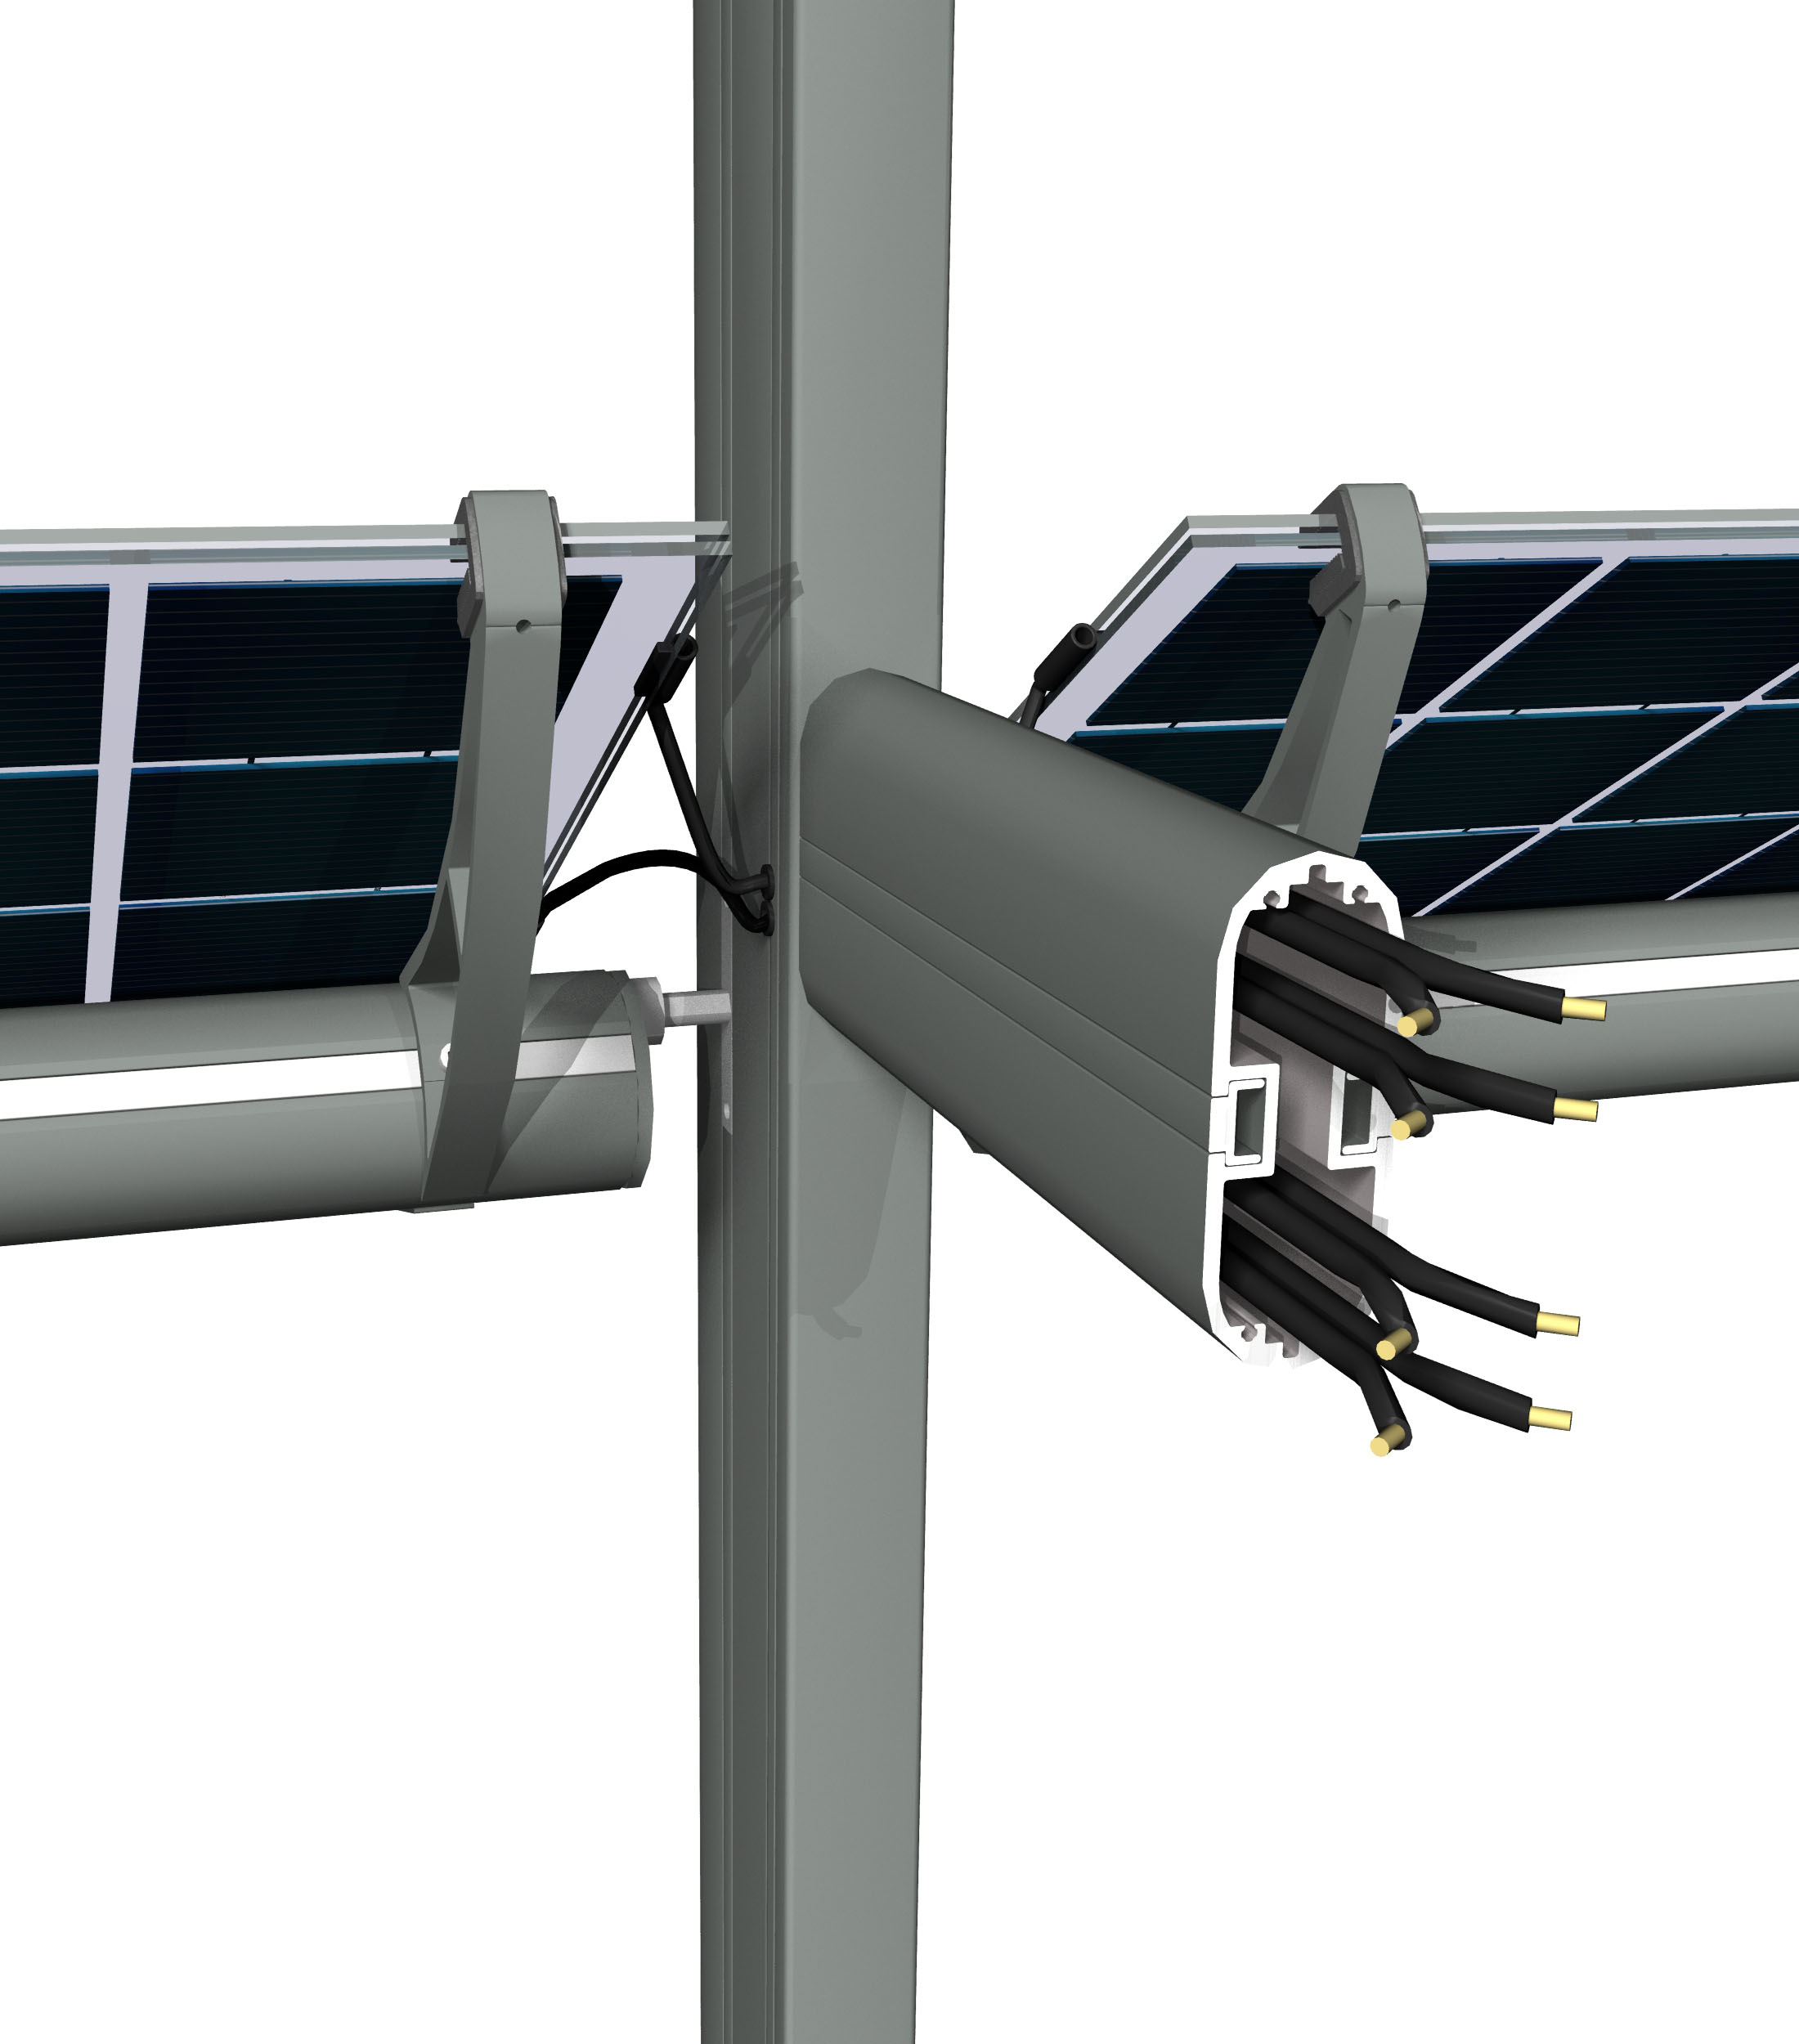 Sistema de sombreamento BIPV, as lminas de sombreamento Reynaers BS 100 Solar